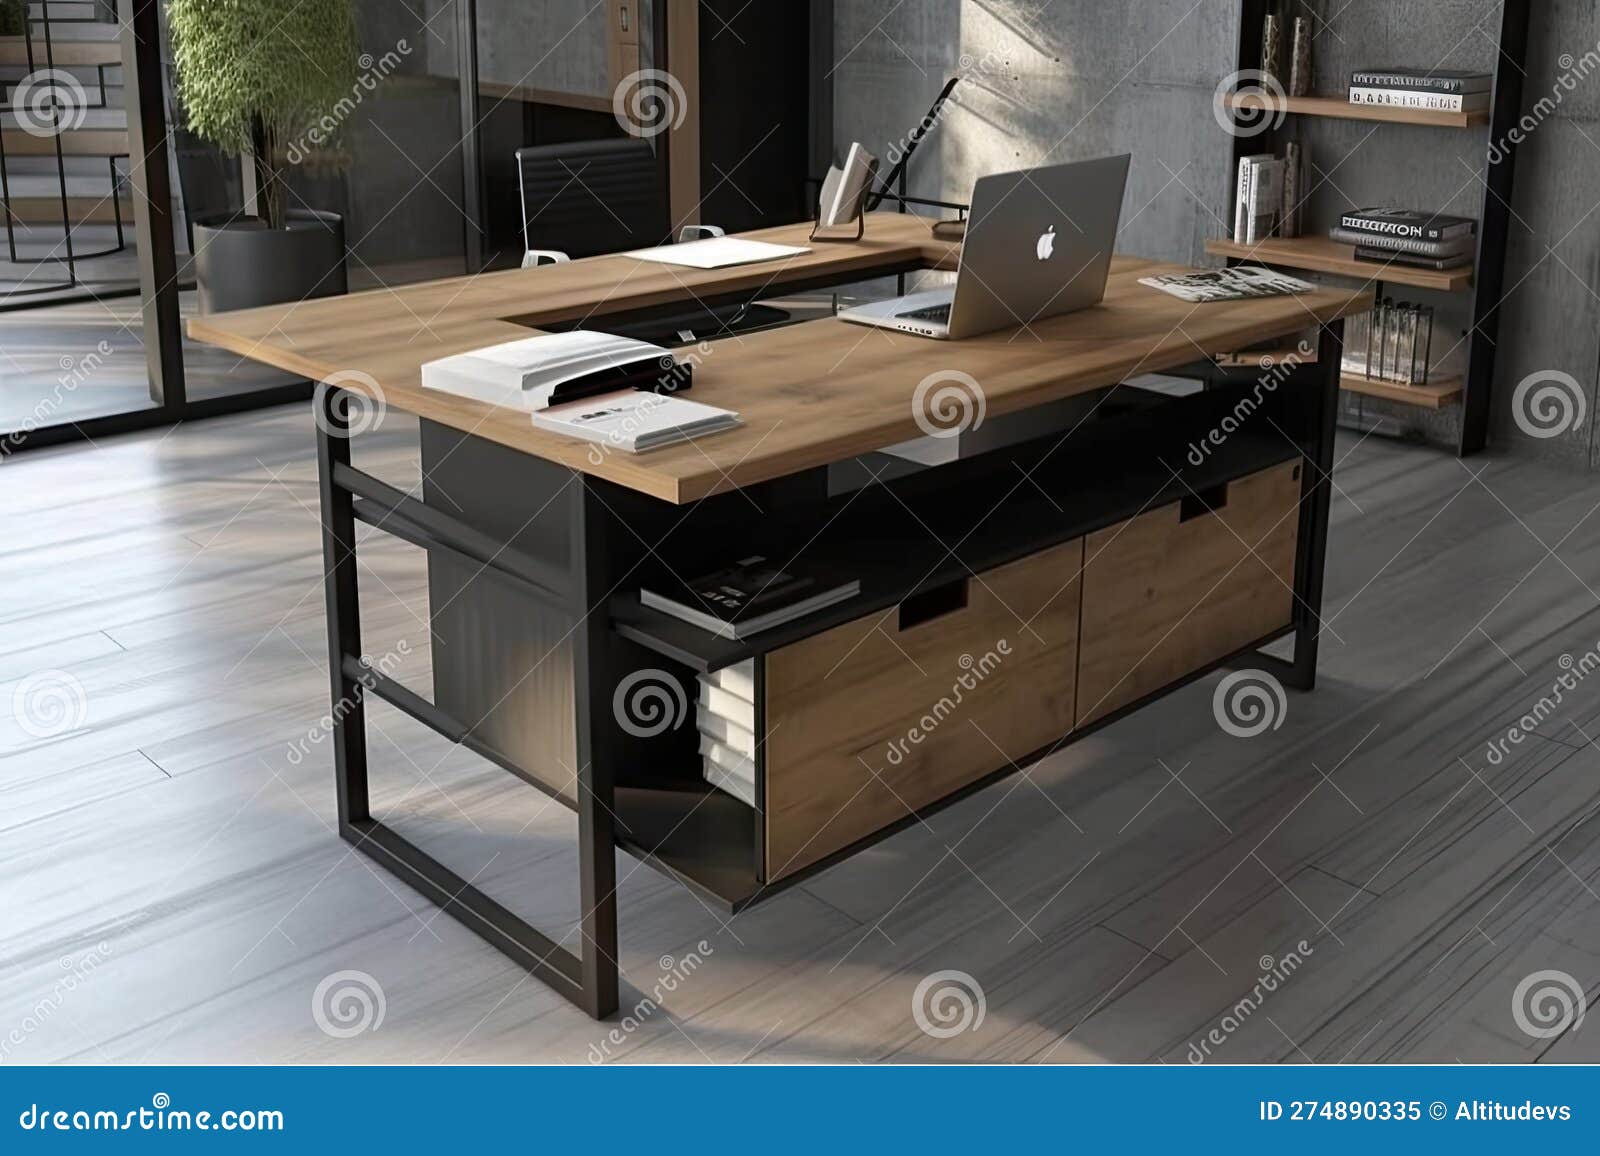 Escritorio Industrial Con Diseño Elegante Y Almacenamiento En Una Oficina  Moderna Stock de ilustración - Ilustración de madera, generado: 274890335